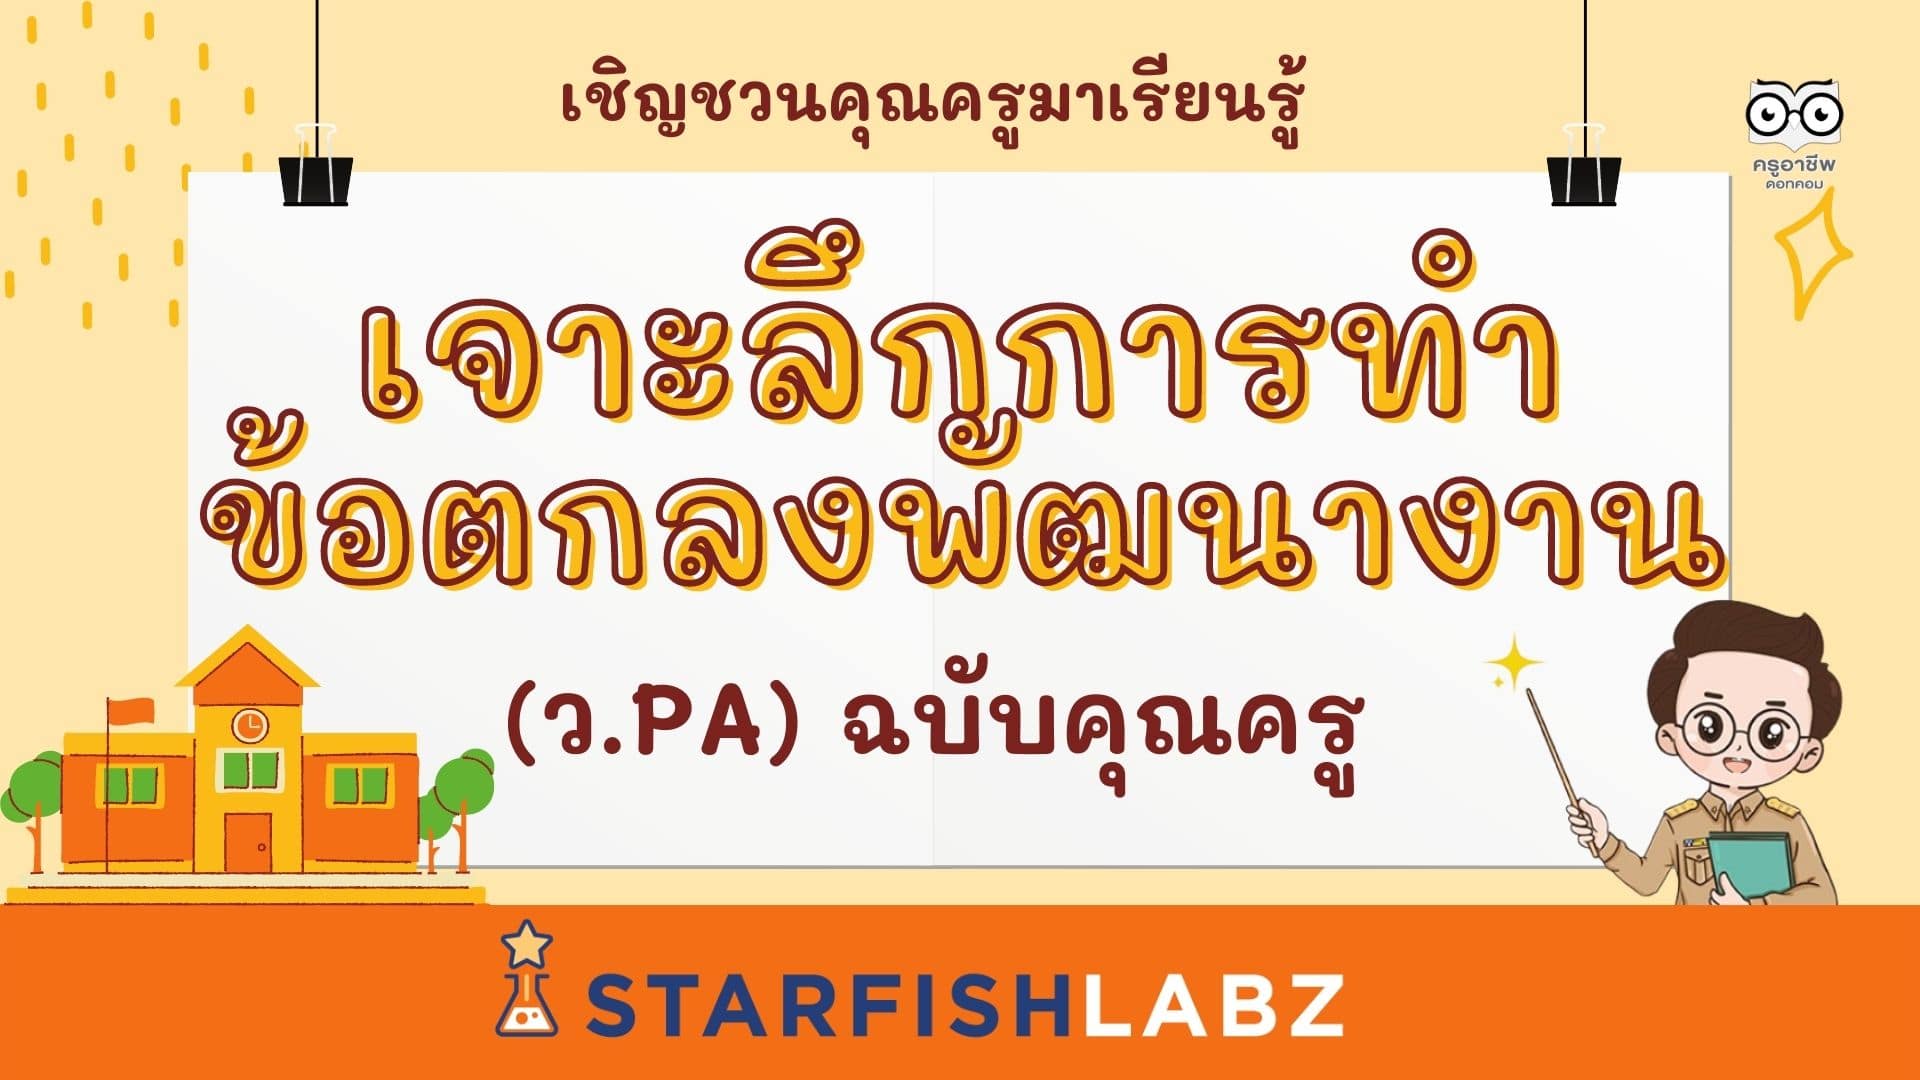 เชิญชวนมาทำความรู้จักแบบเจาะลึก การทำข้อตกลงพัฒนางาน (ว.PA) ฉบับคุณครู โดยStarfish Labz